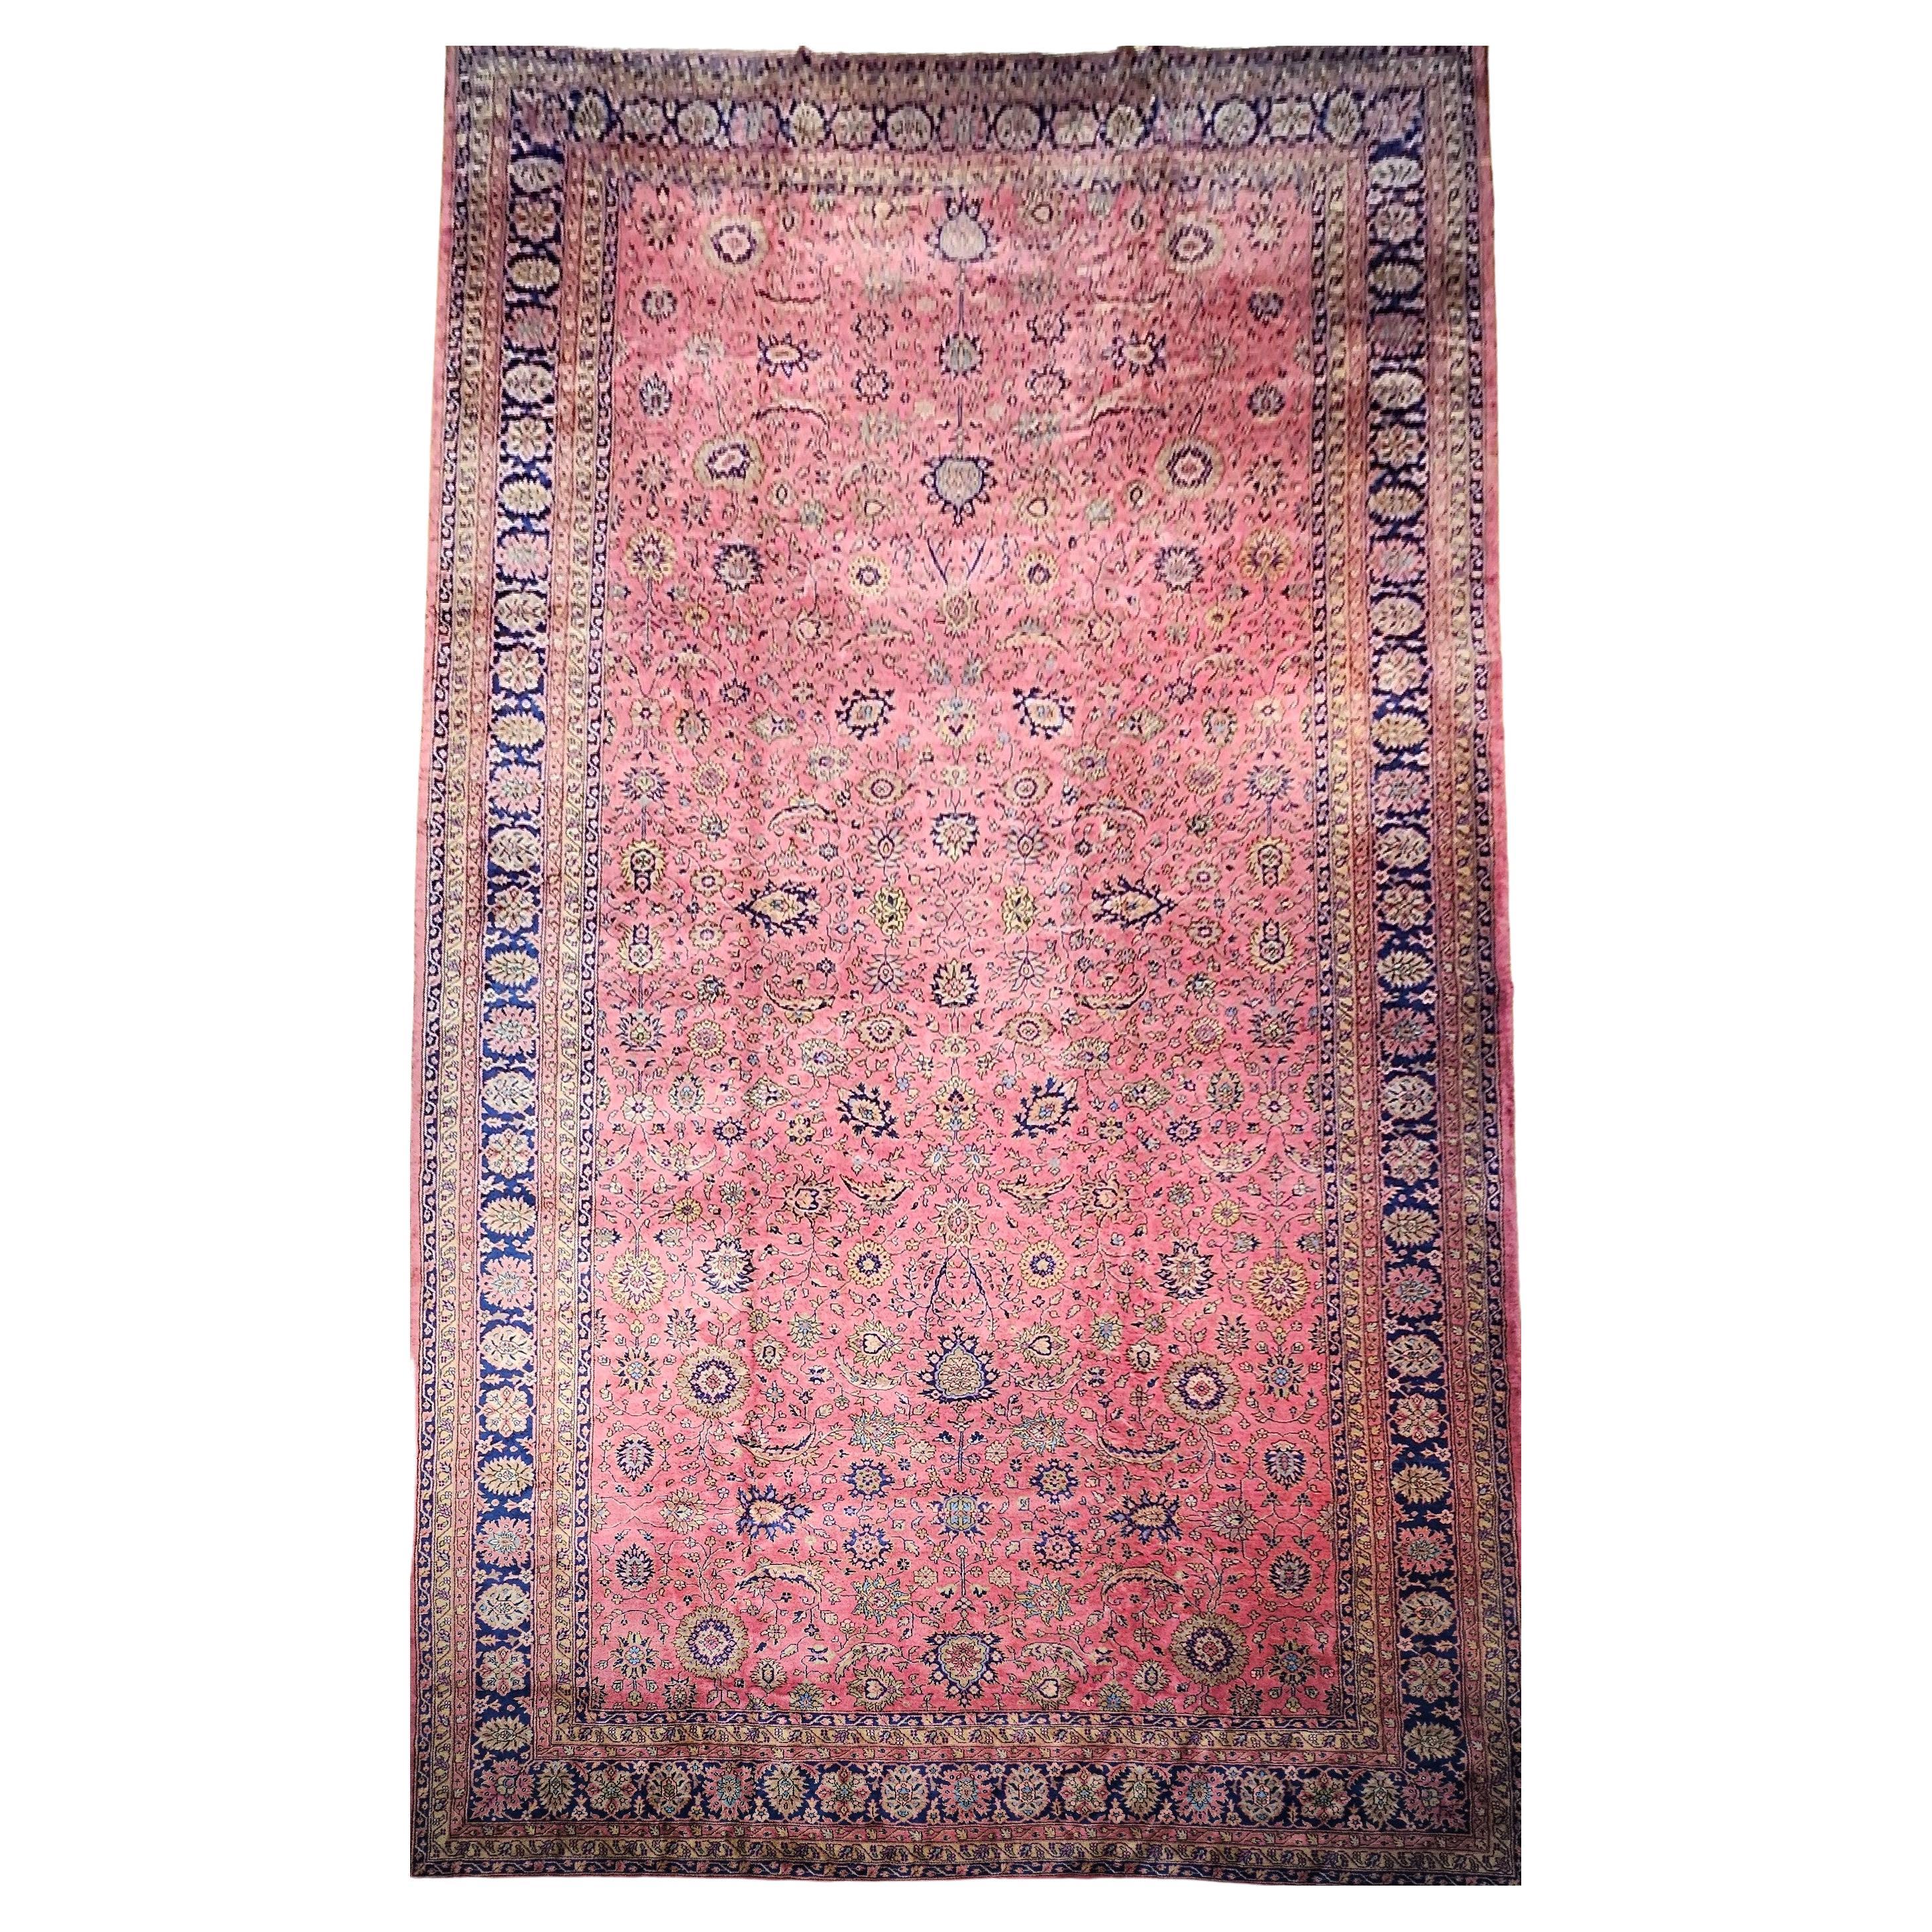 Übergroßer türkischer Vintage-Teppich in Allover-Geometrischem Muster in Blassrosa, Marineblau, Oversize